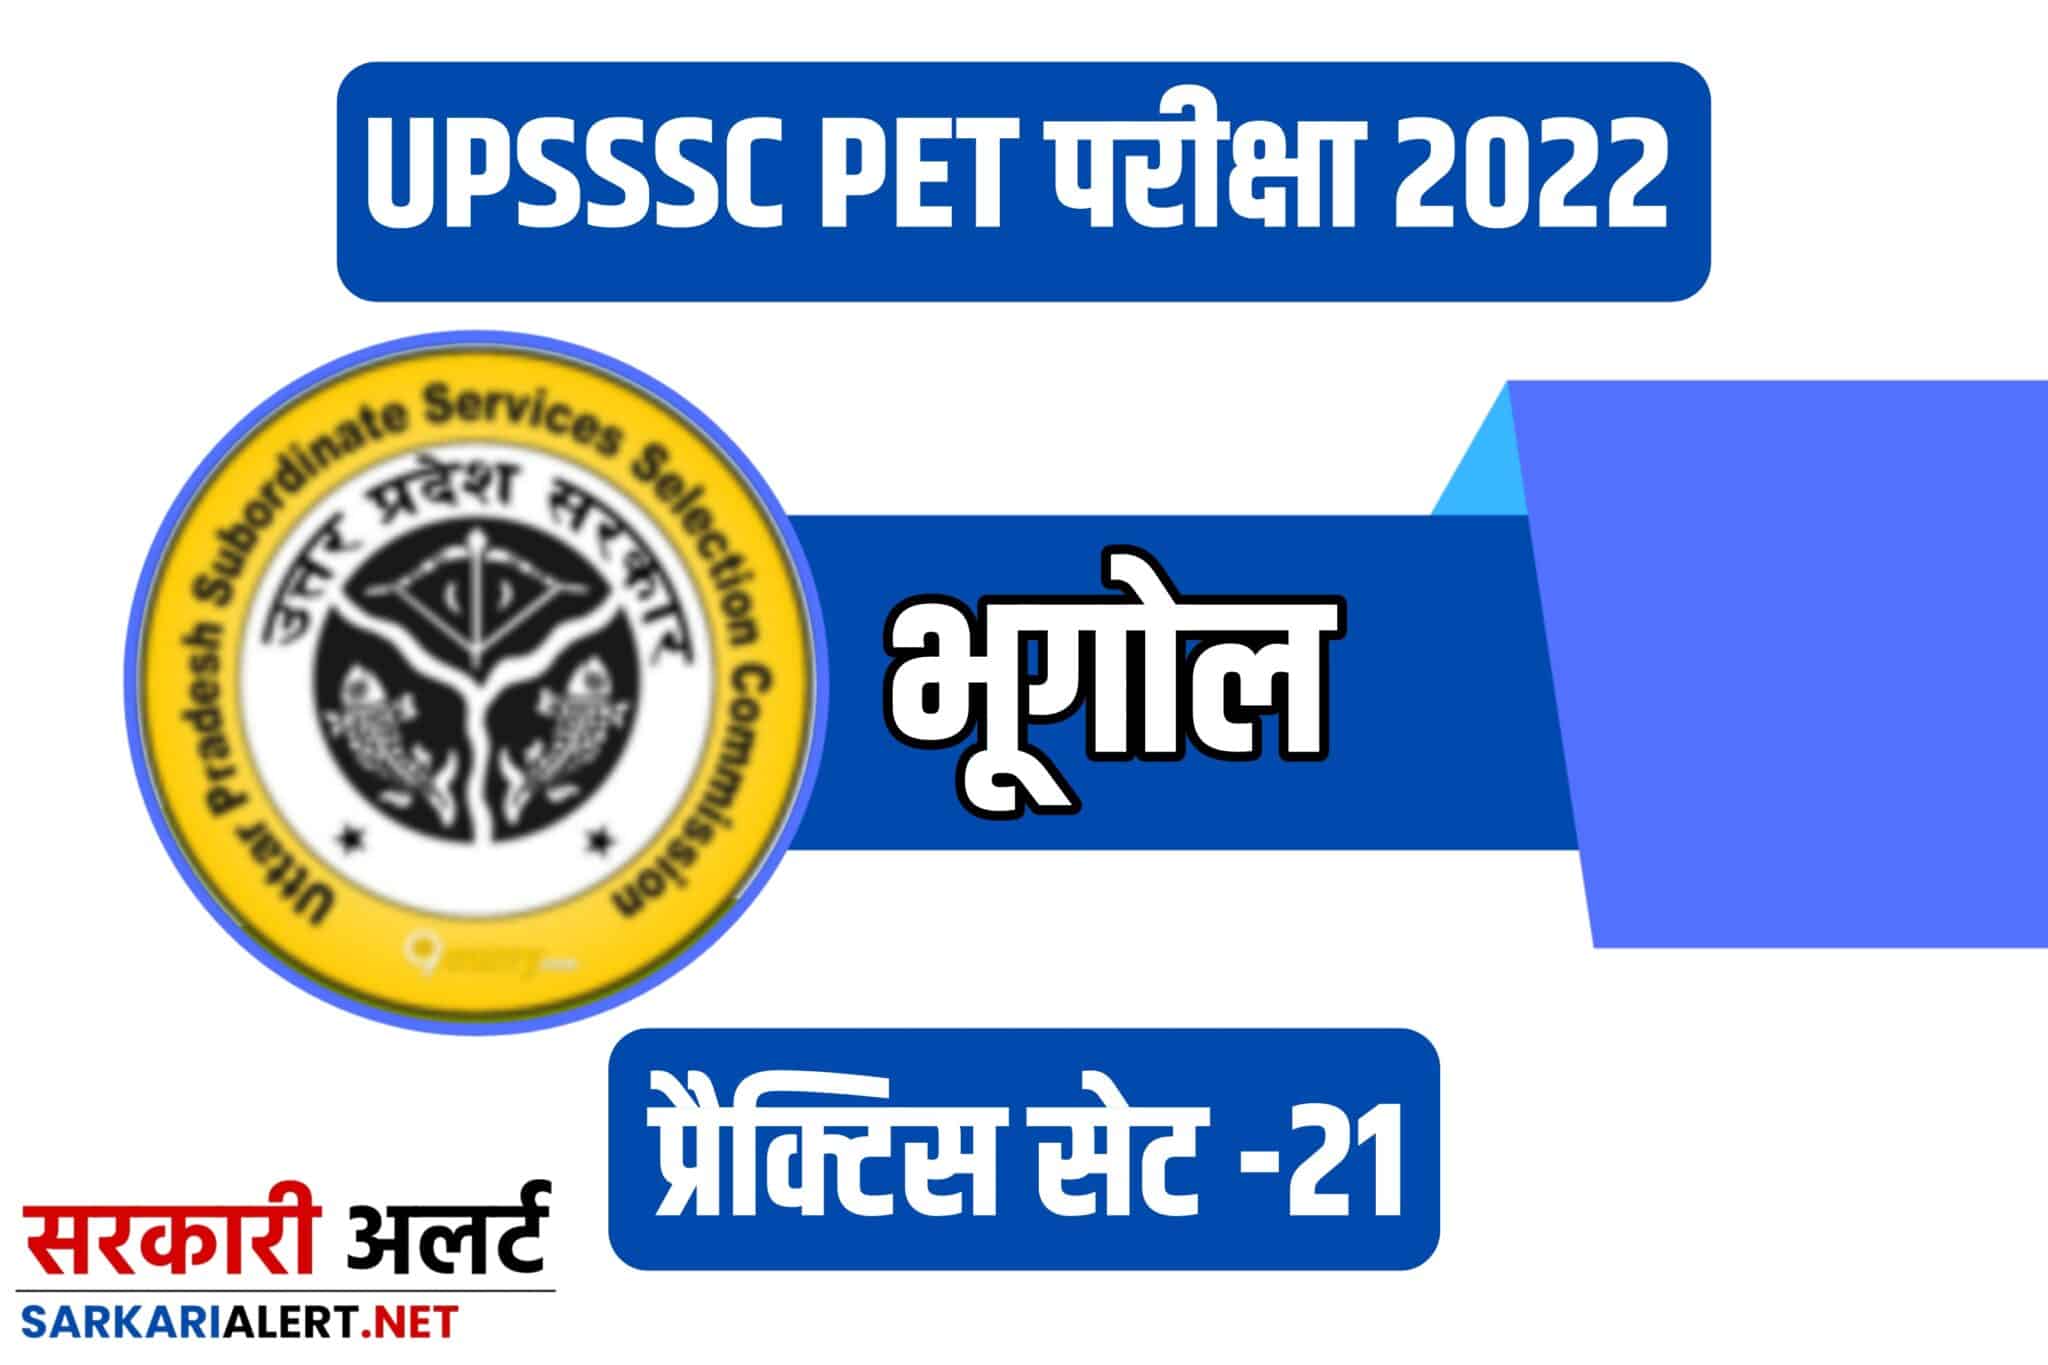 UPSSSC PET 2022 Geography Practice Set 21 |भूगोल के 25 महत्वपूर्ण प्रश्नों का संग्रह, अवश्य पढ़ें